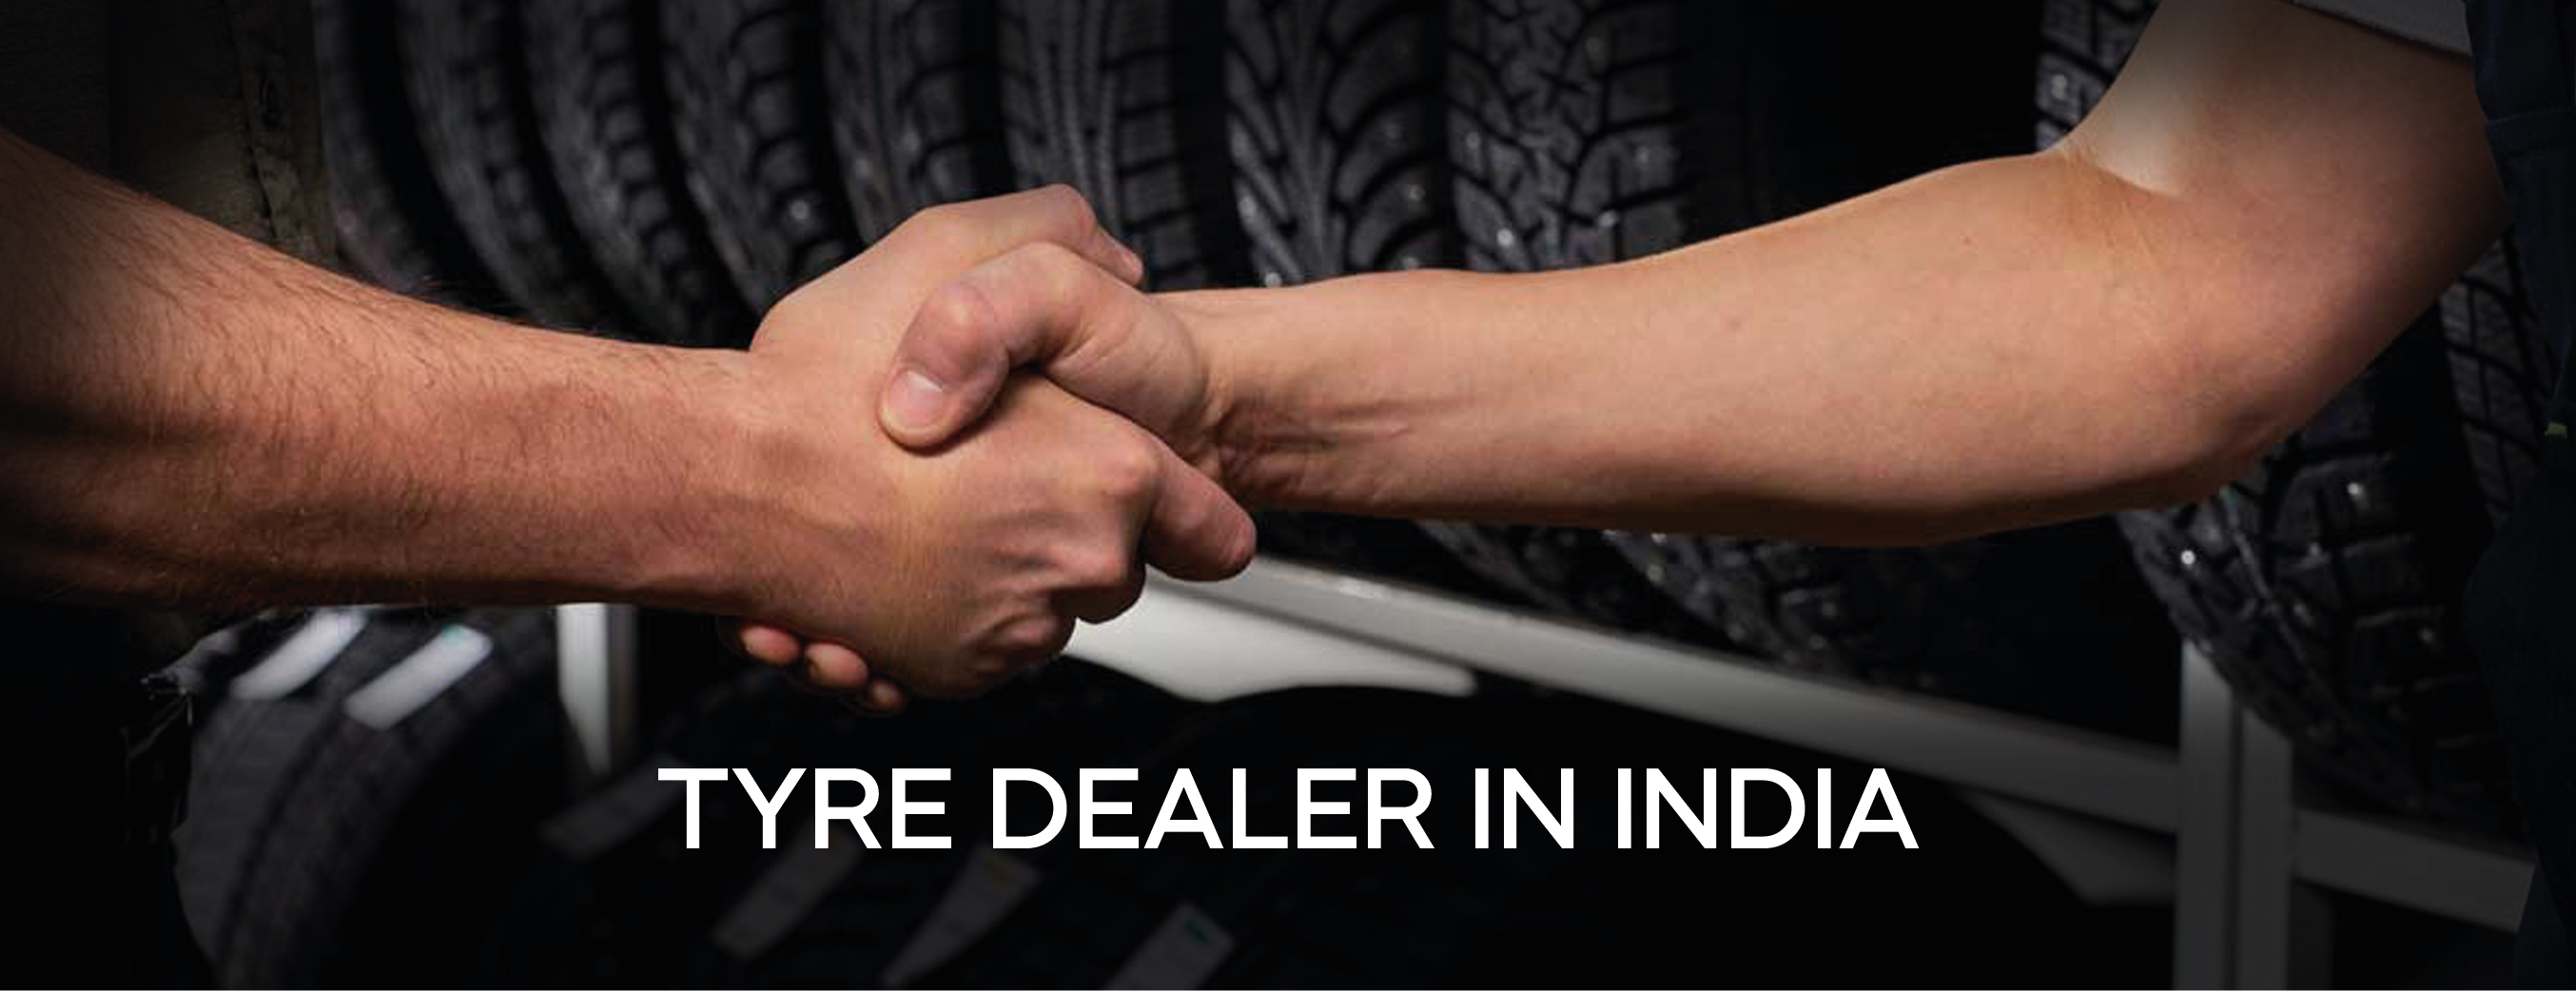 Tyre Dealer in India